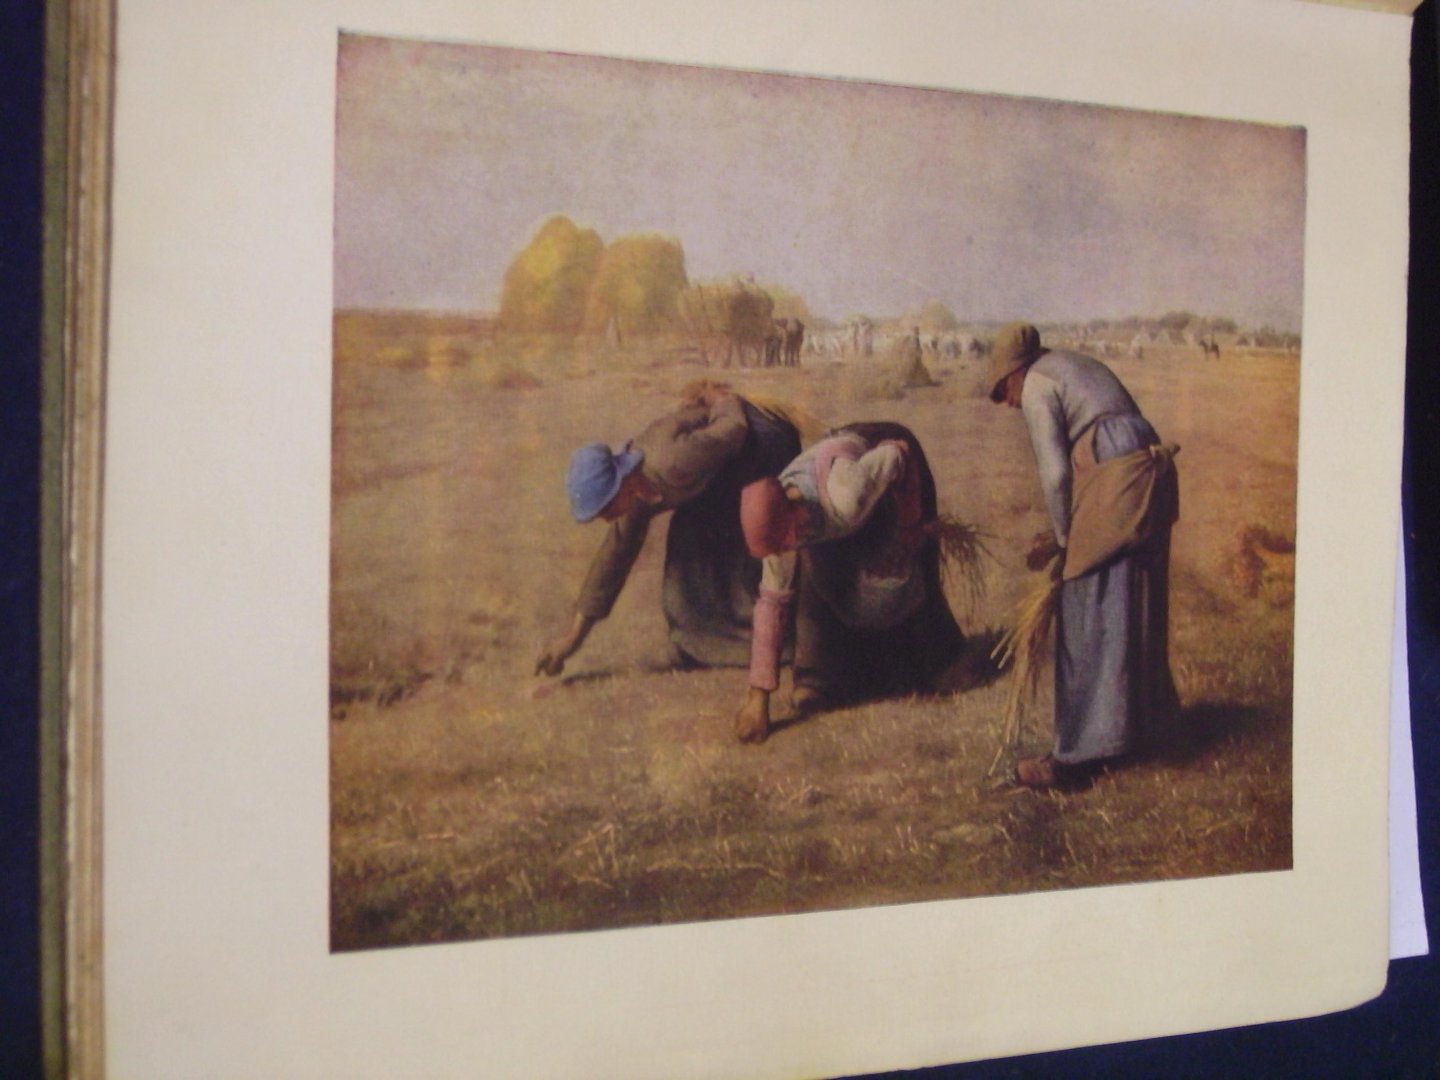 Roujon, M. Henri - Les peintres illustres Millet ( N0. 19.) Millet huit reproductions facsimile en couleurs